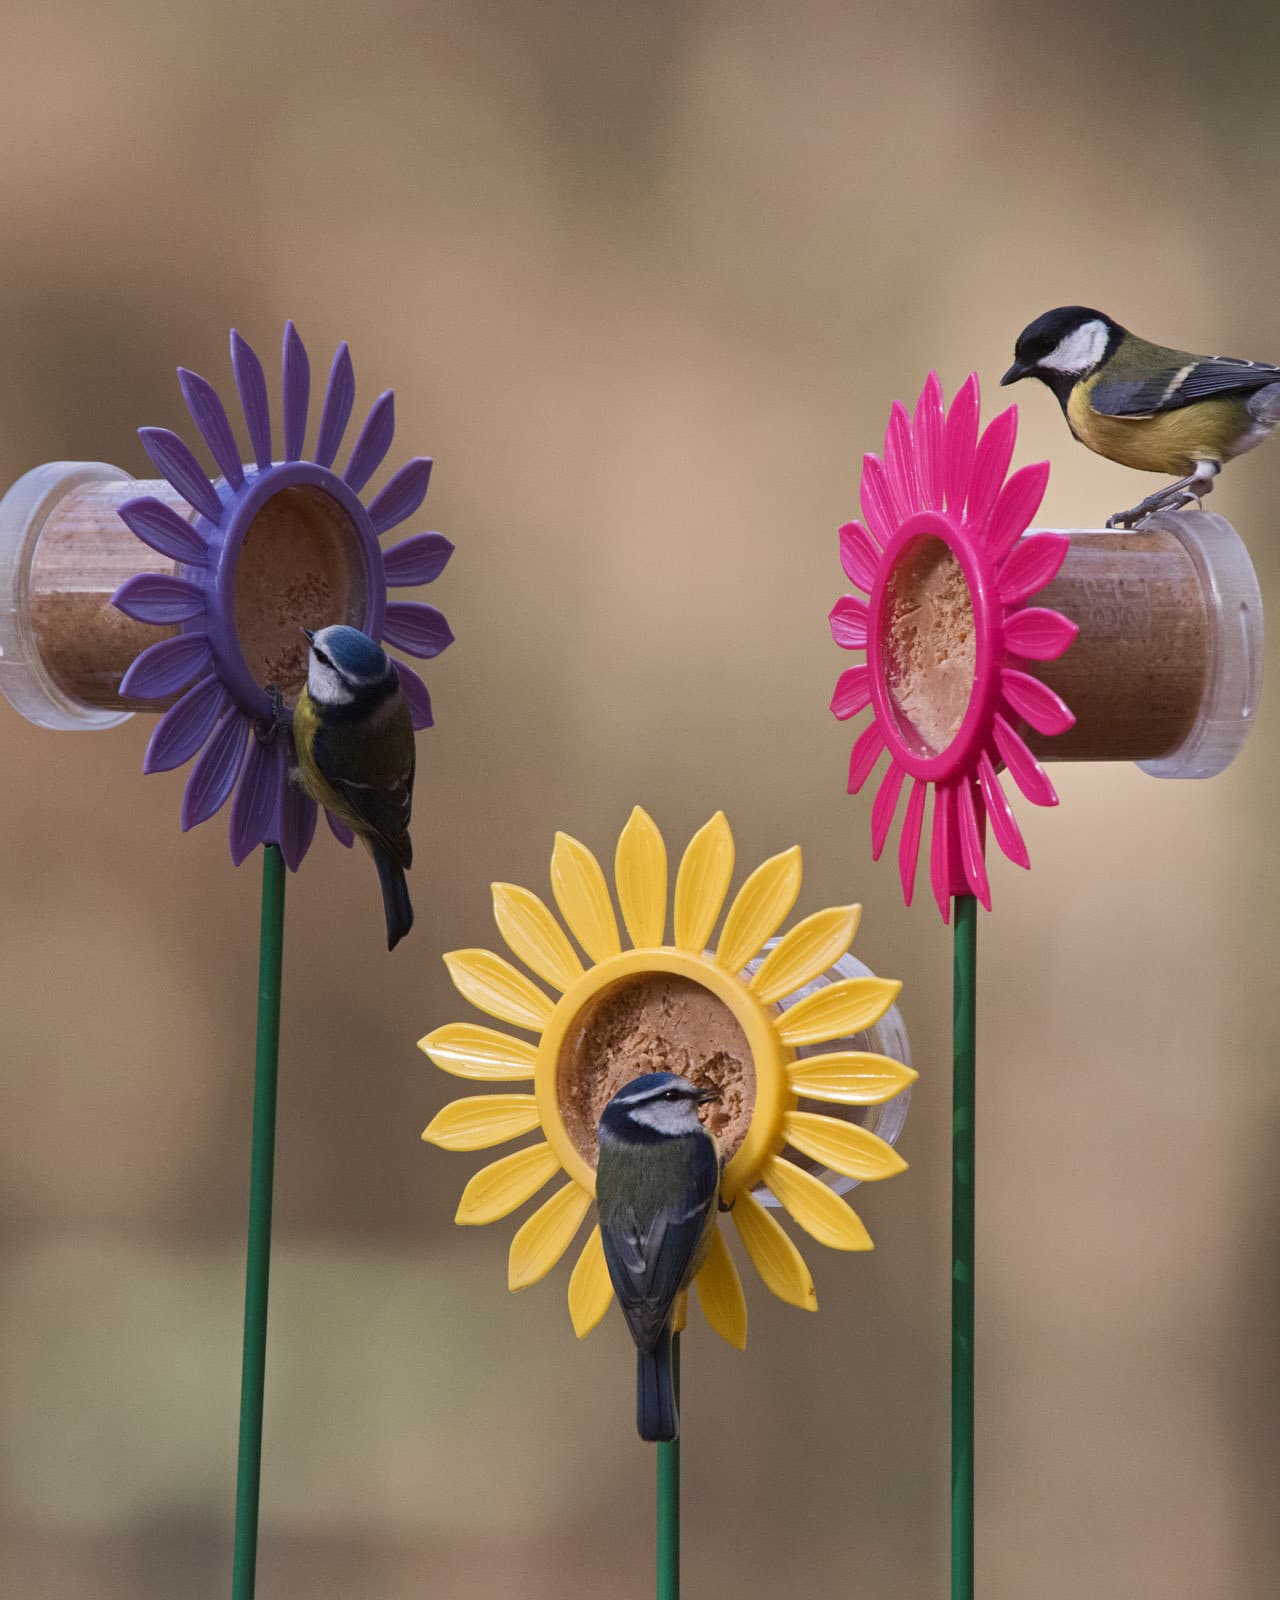 https://hello-birdy.com/wp-content/uploads/2019/03/flutter-butter-flowerbed-feeder-pic01.jpg